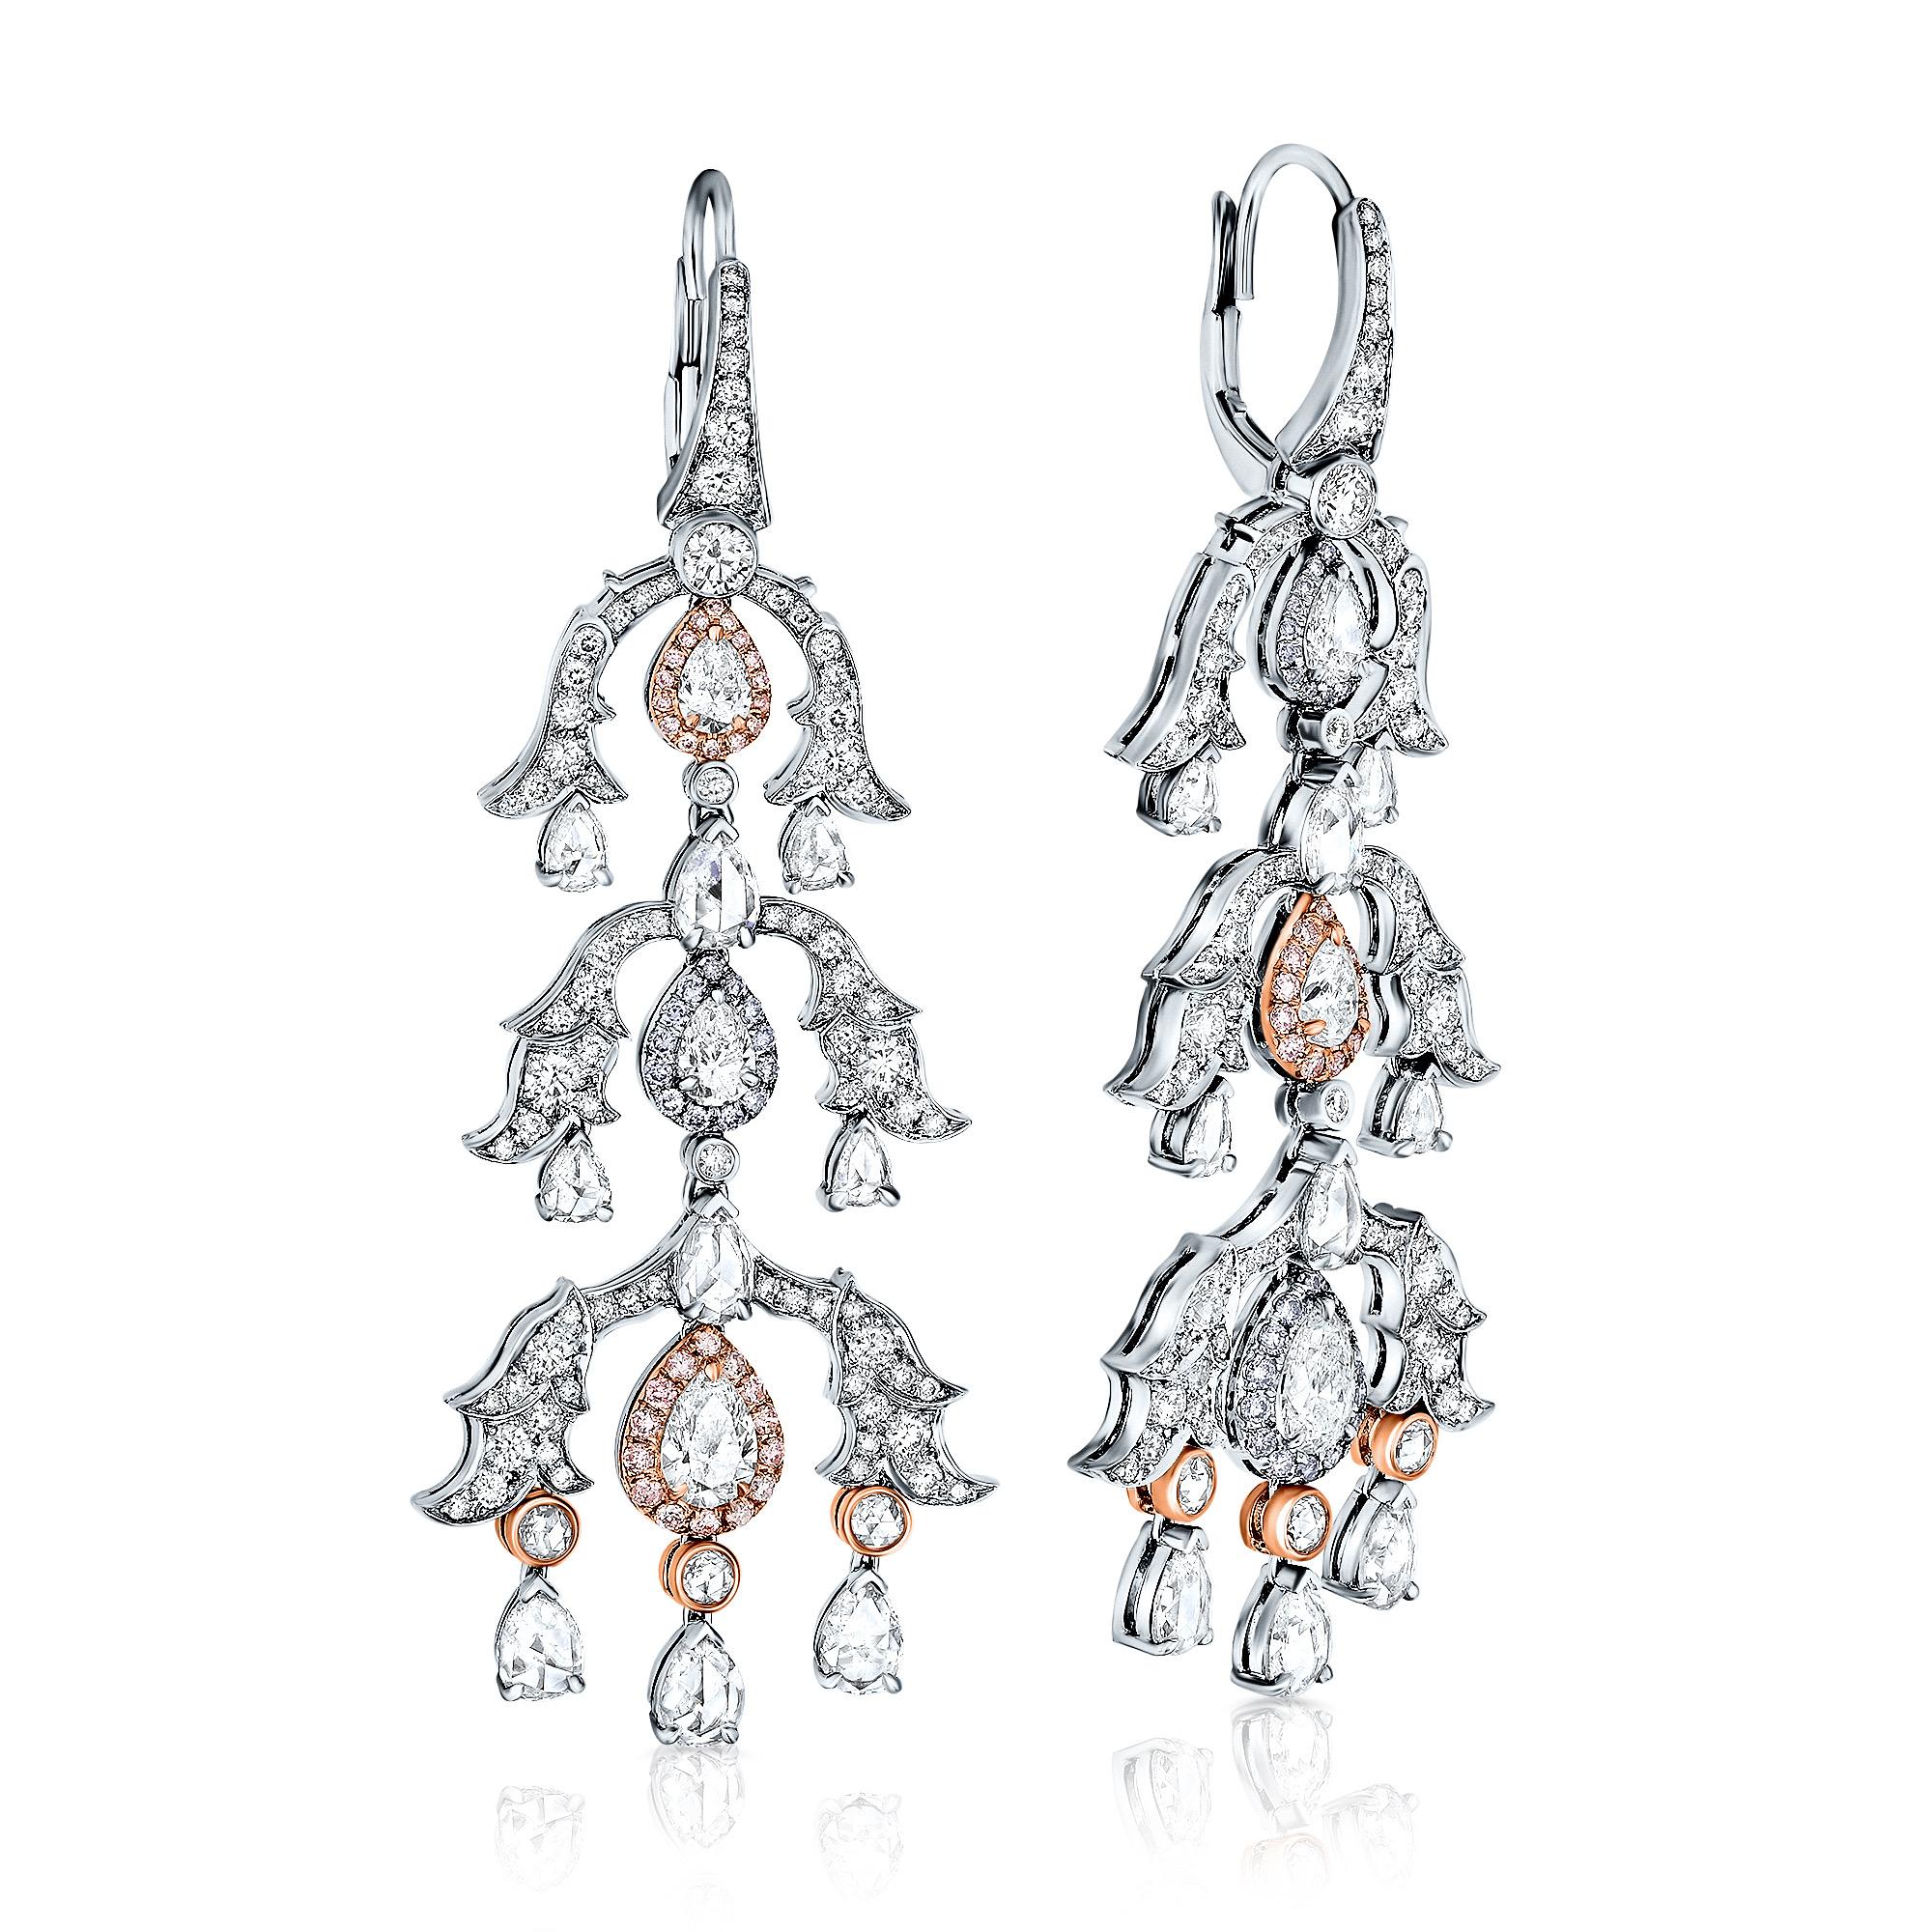 Voici notre superbe paire de pendants d'oreilles chandelier en diamants blancs et roses, d'un peu moins de 7 carats et sertis en or blanc et rose 18 carats.

Ces boucles d'oreilles sont vraiment parfaites pour toutes les occasions. Ils mettent en